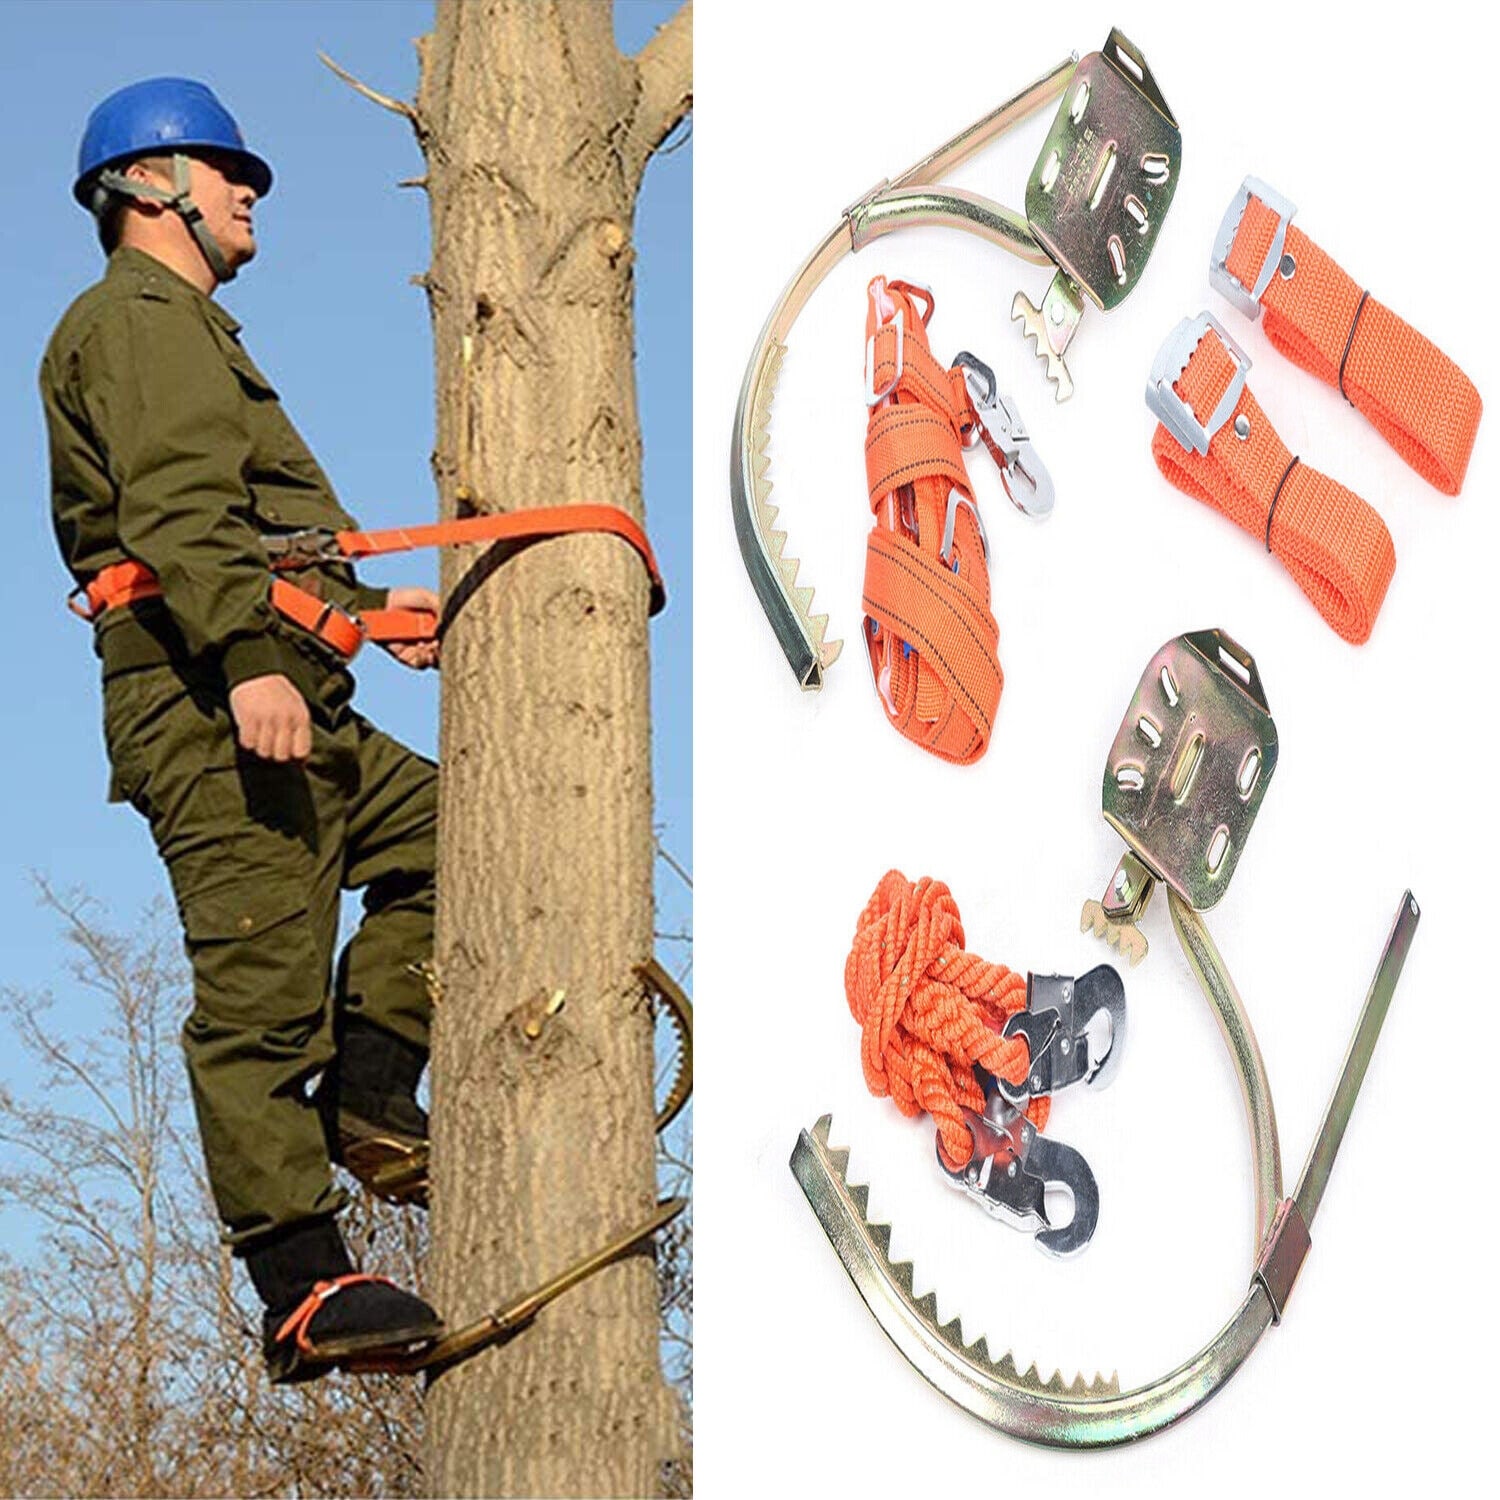 Adjustable Tree Climbing Gear Spike Set Tool - 17.7in - 17.7in - Silver/Orange